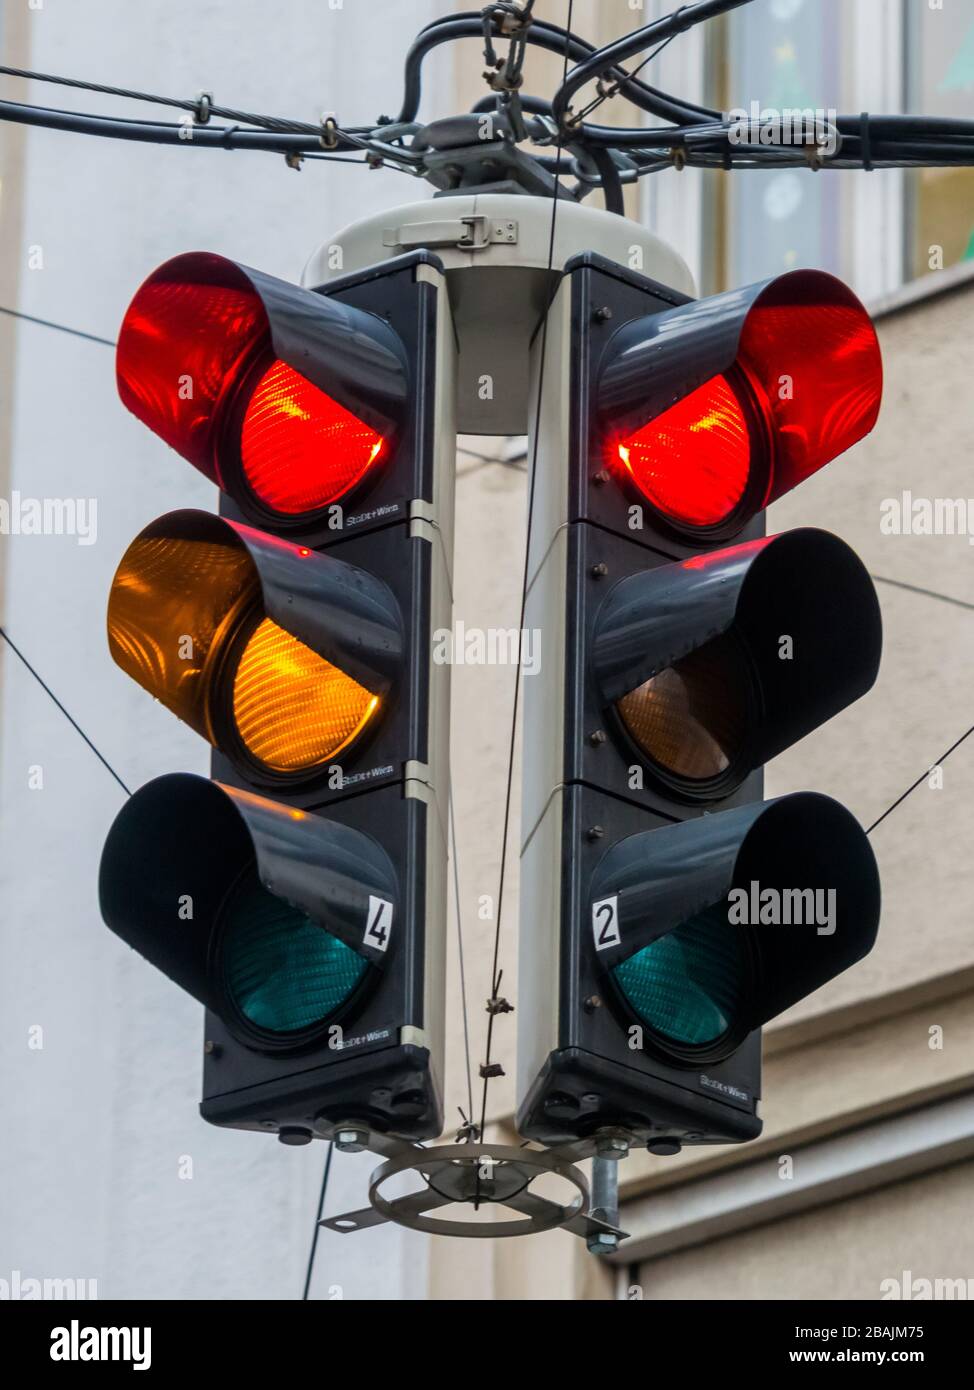 Verkehrsampel mit rotem und gelben oder orangem Licht. Stock Photo